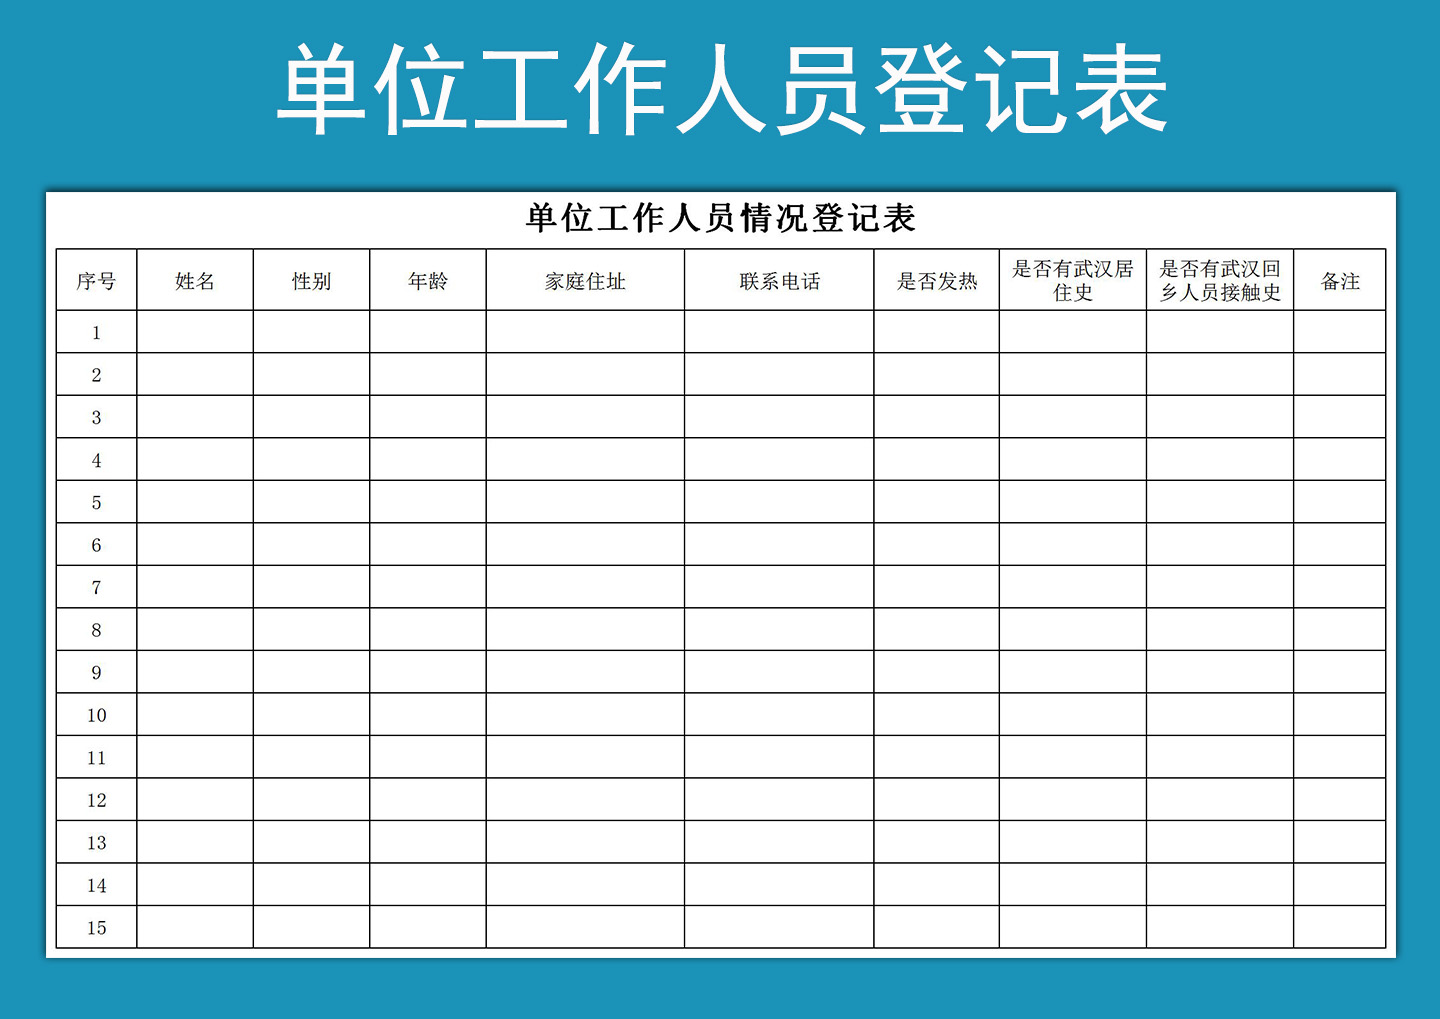 员工个人信息登记表excel格式下载-华军软件园